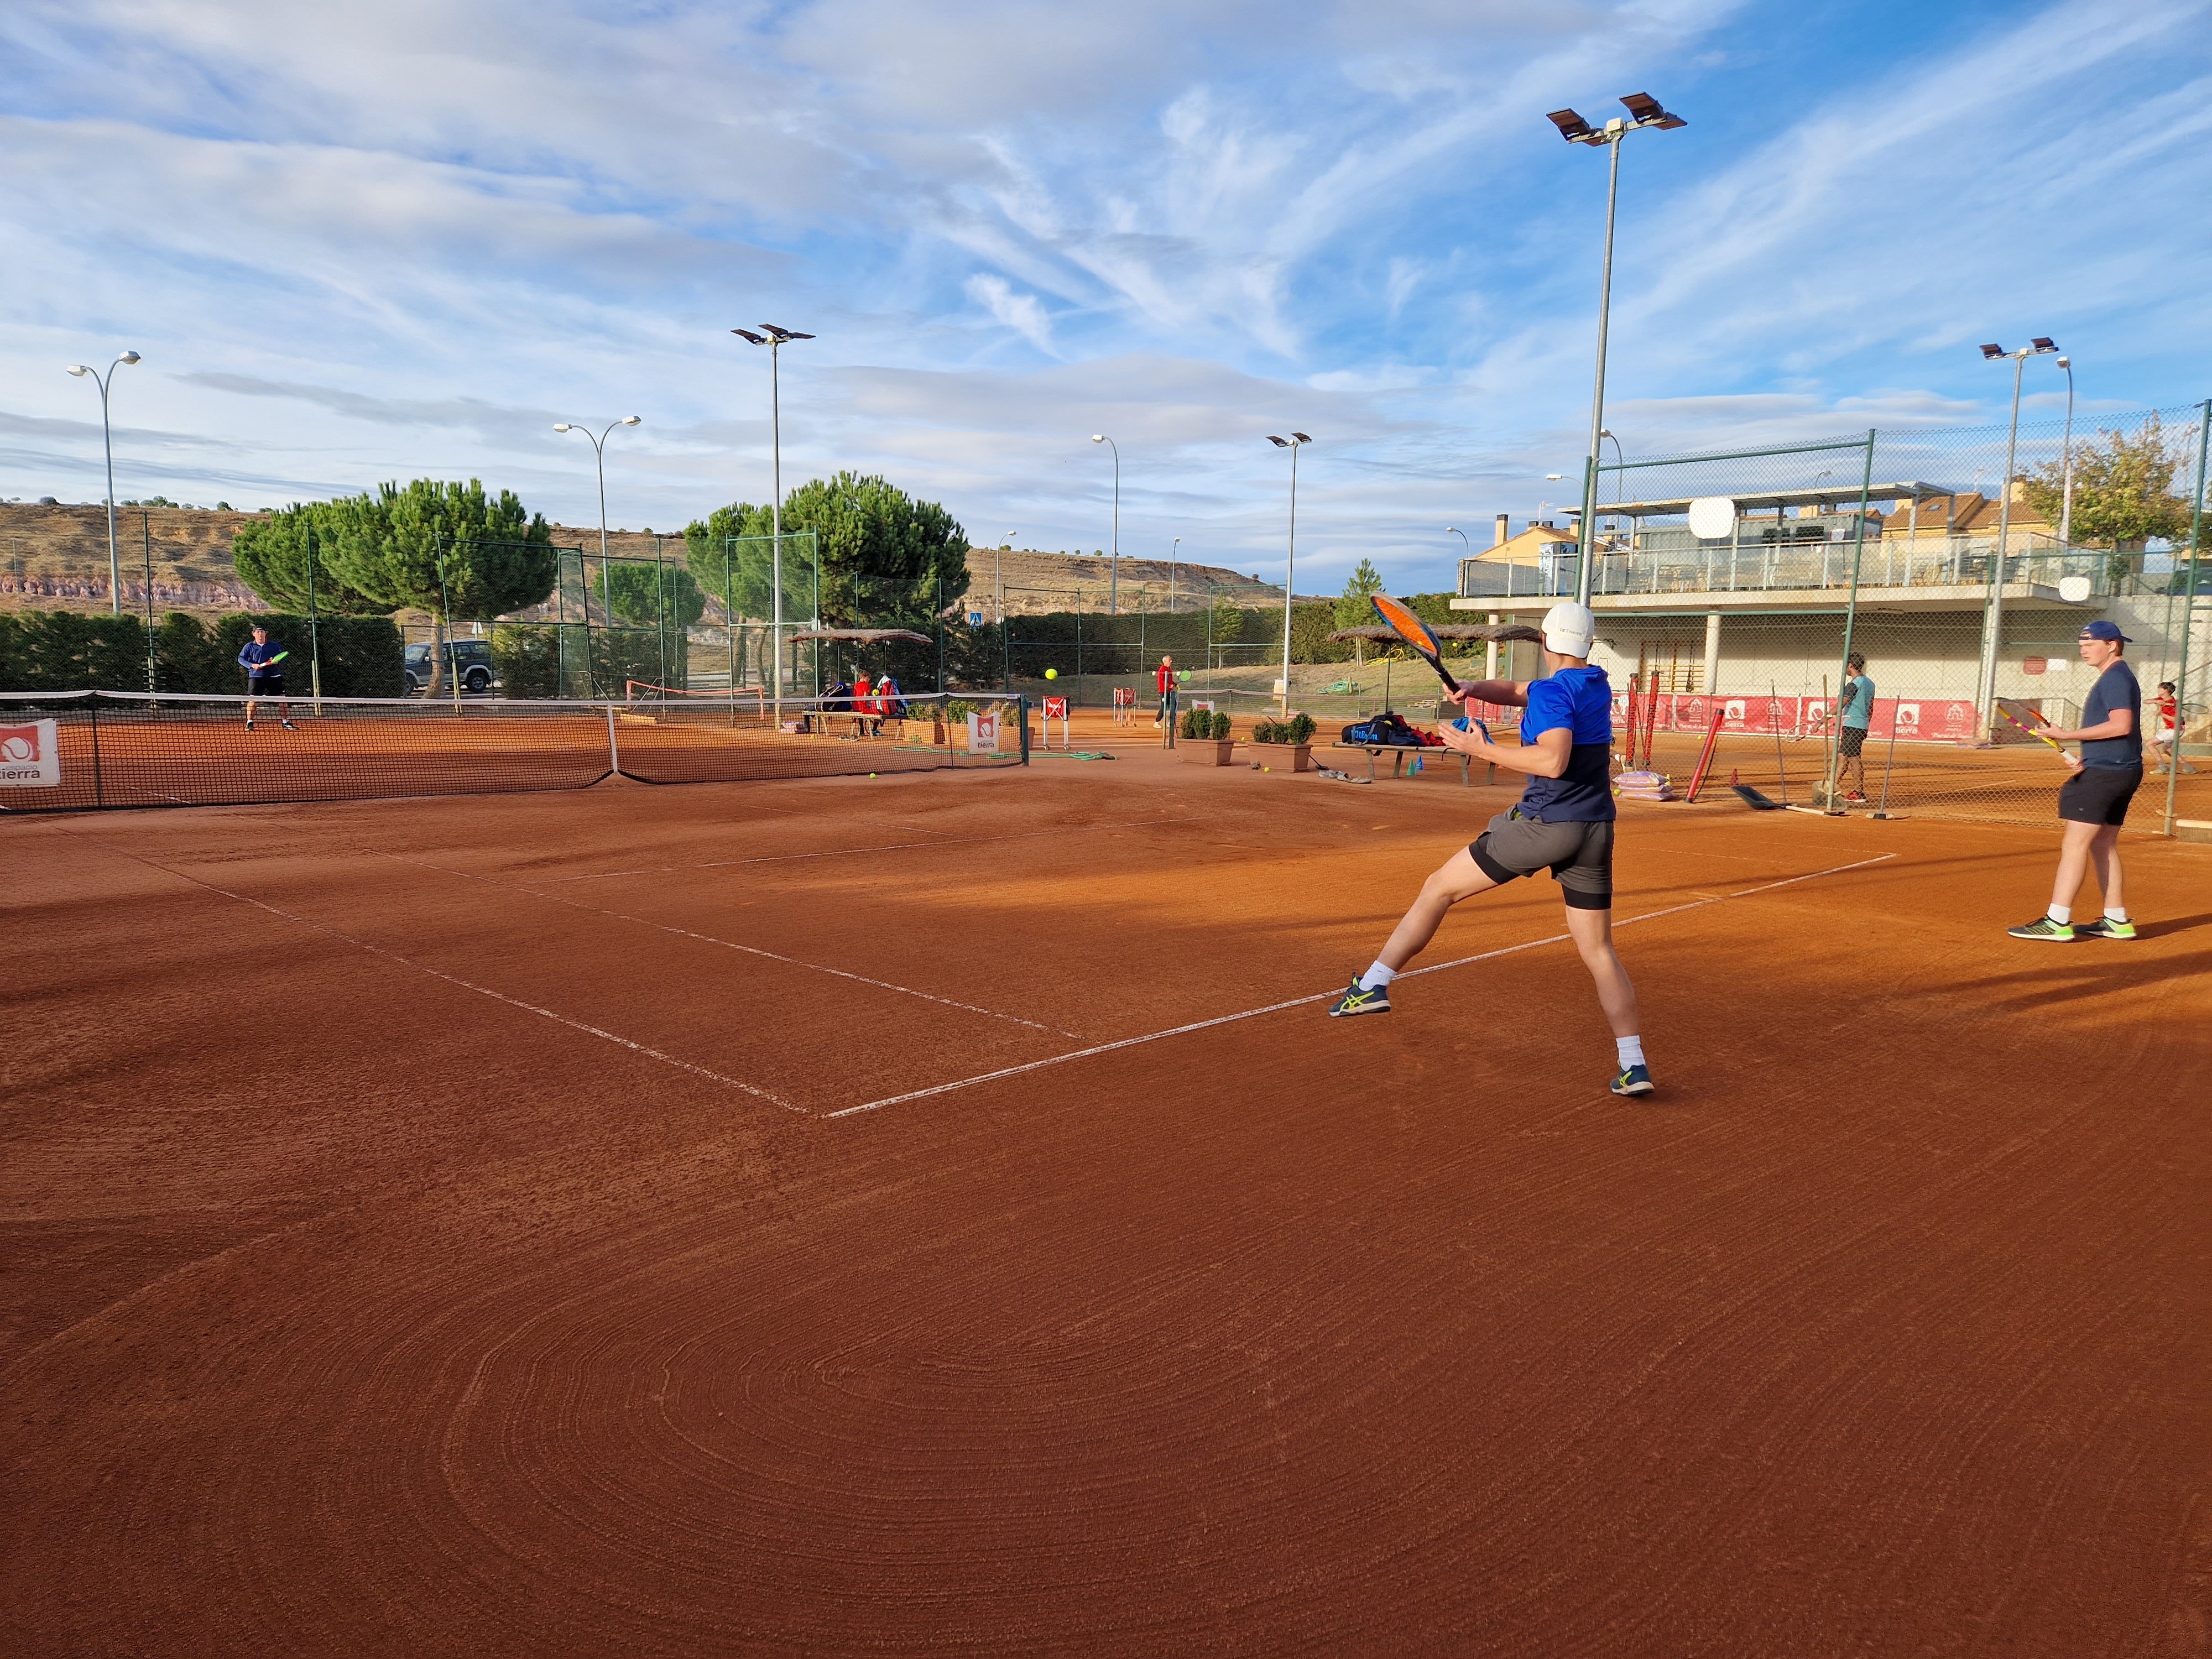 Proctor en Segovia afternoon activity clay court tennis